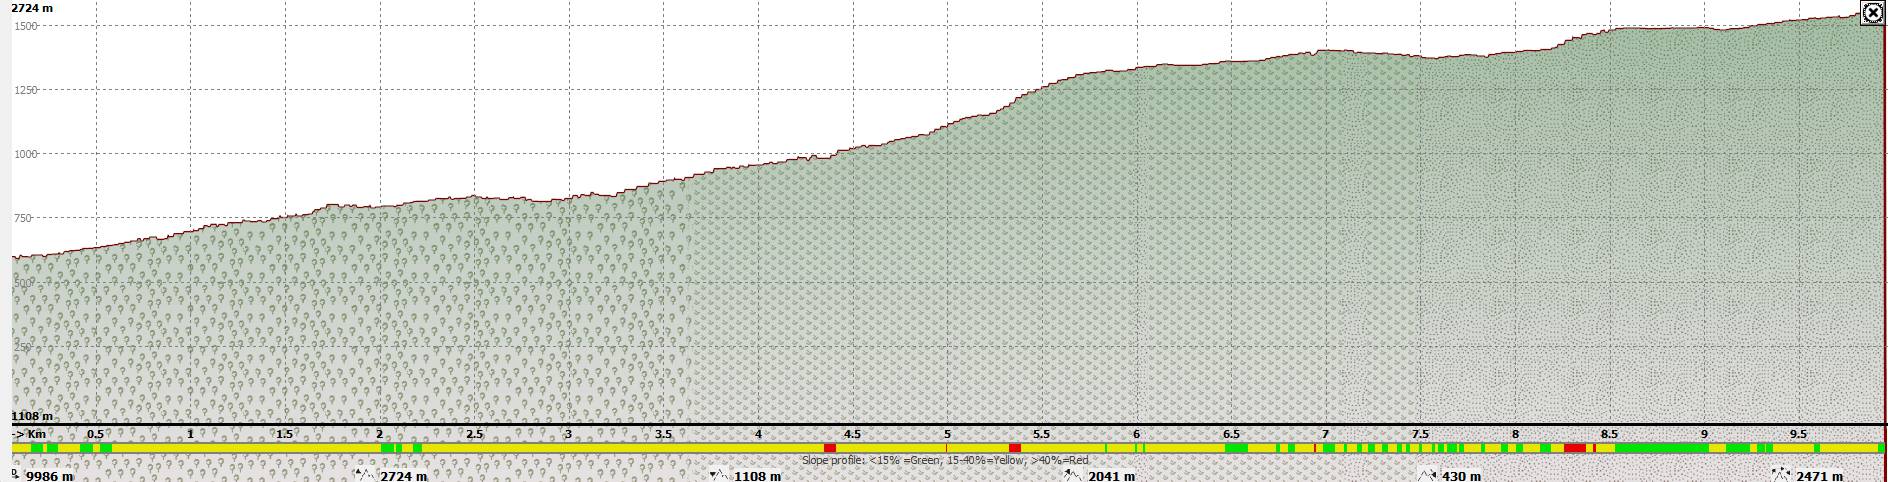 Elevation profile of the ascent to Giosos Apostolidis refuge via Gortsia